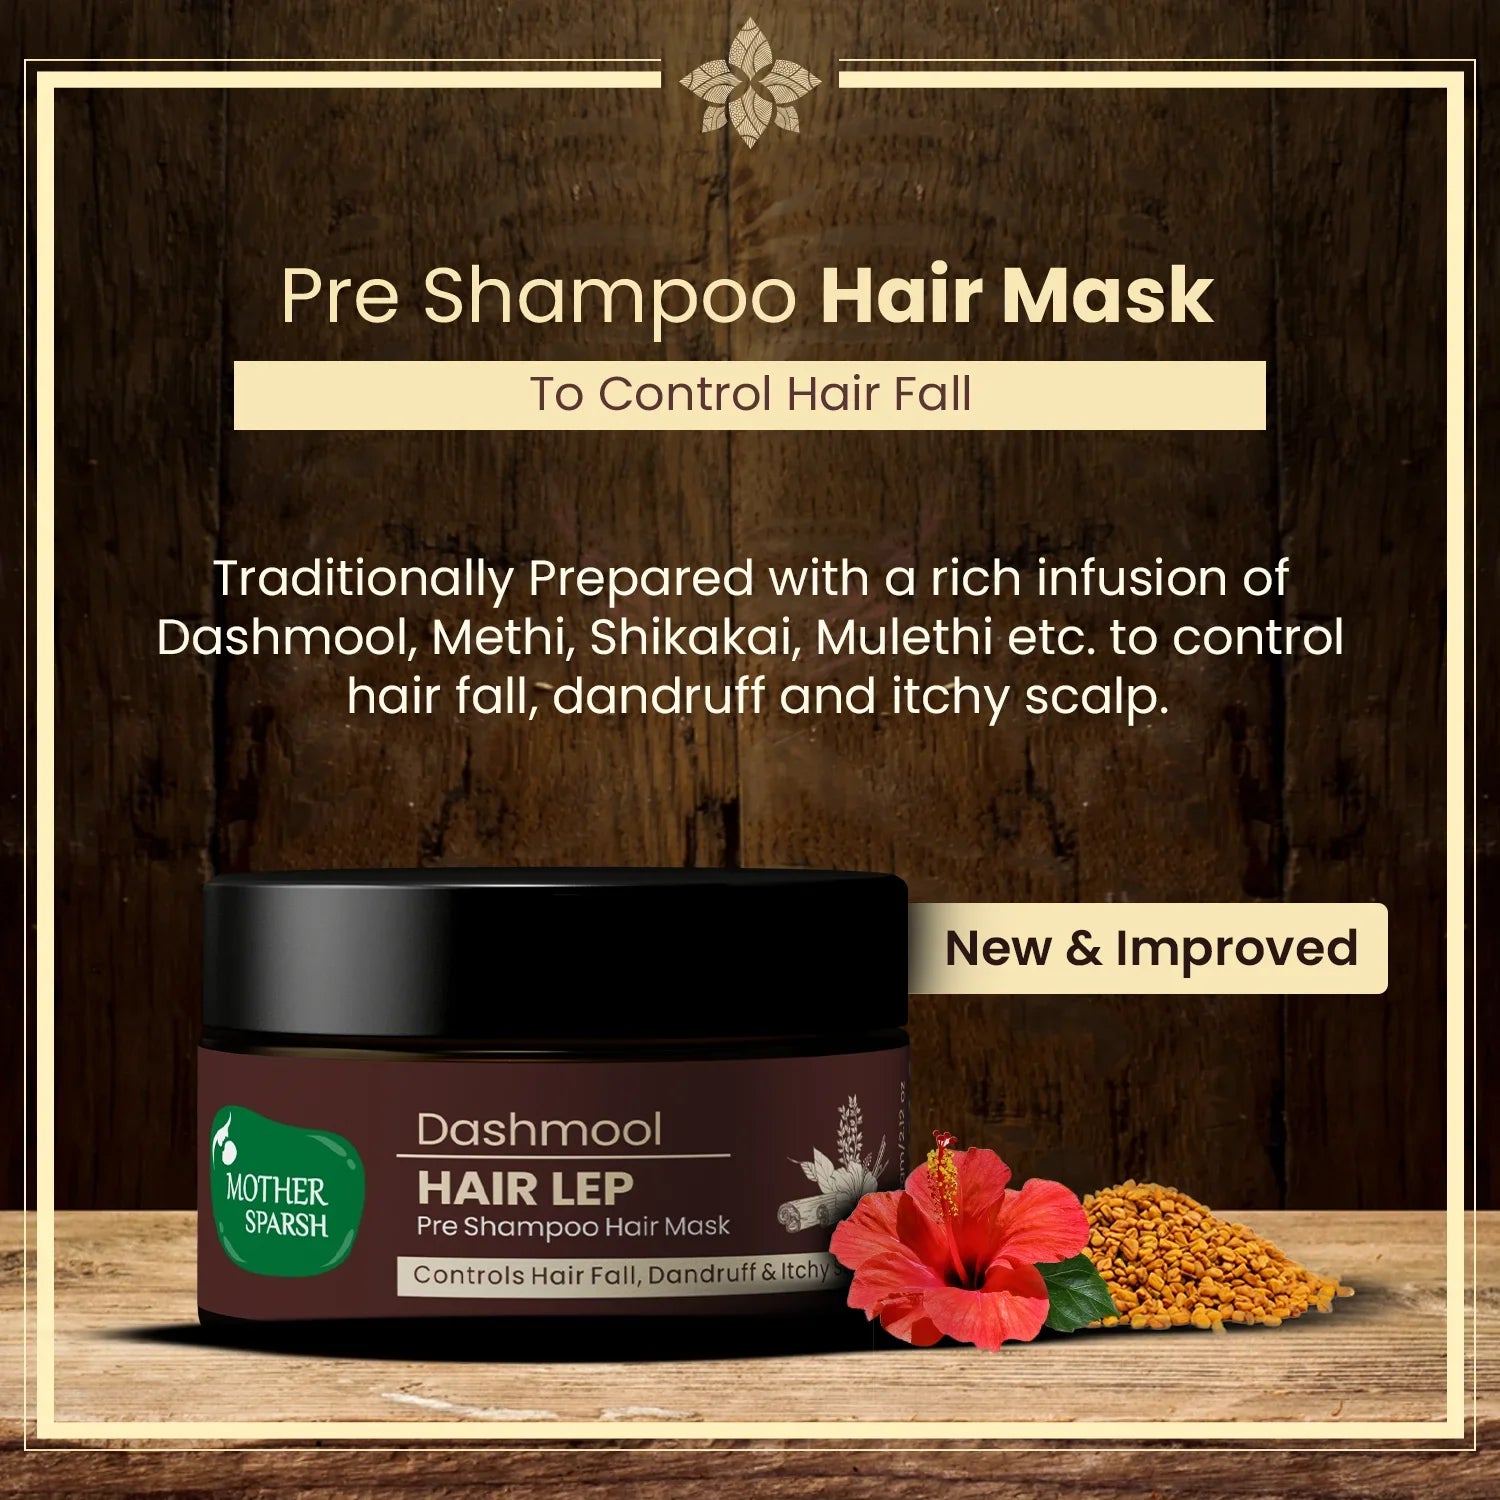 Pre-Shampoo Hair Mask to control hair fall & dandruff